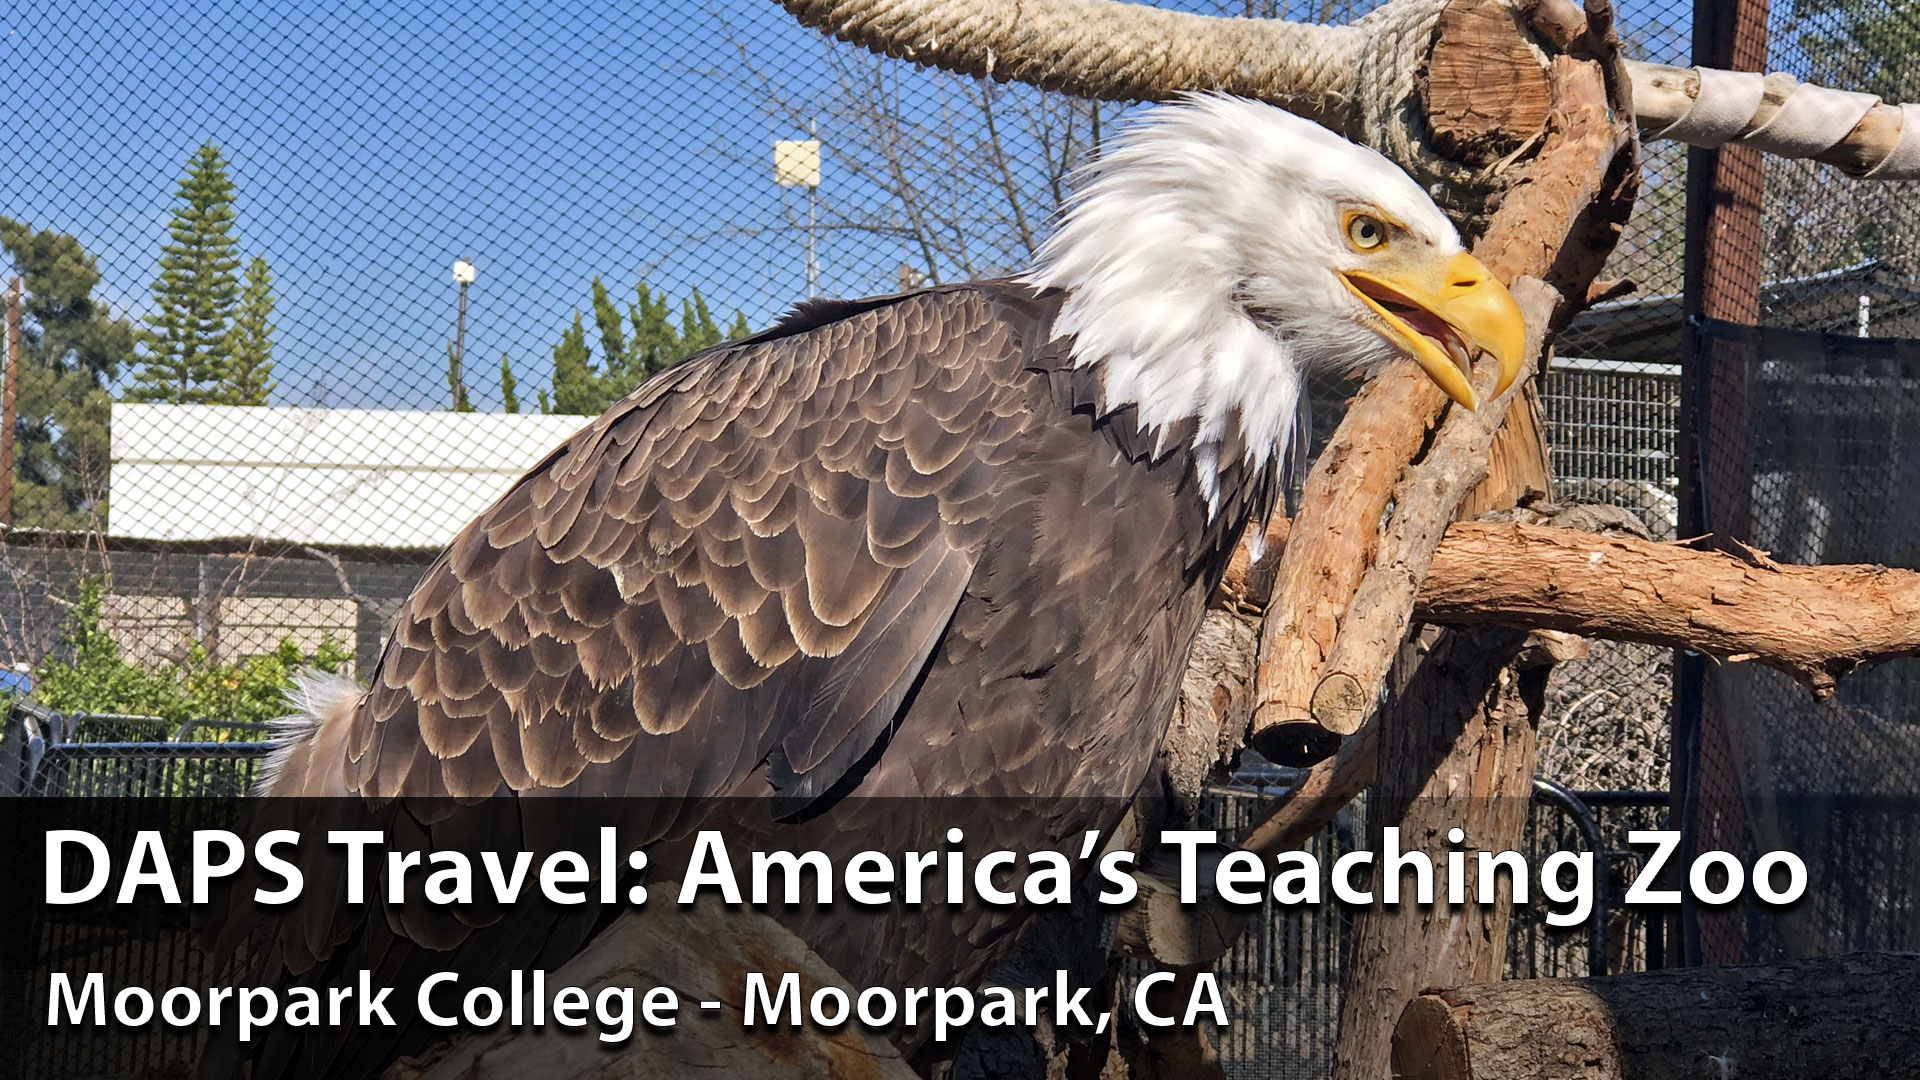 America’s Teaching Zoo: DAPS Travel